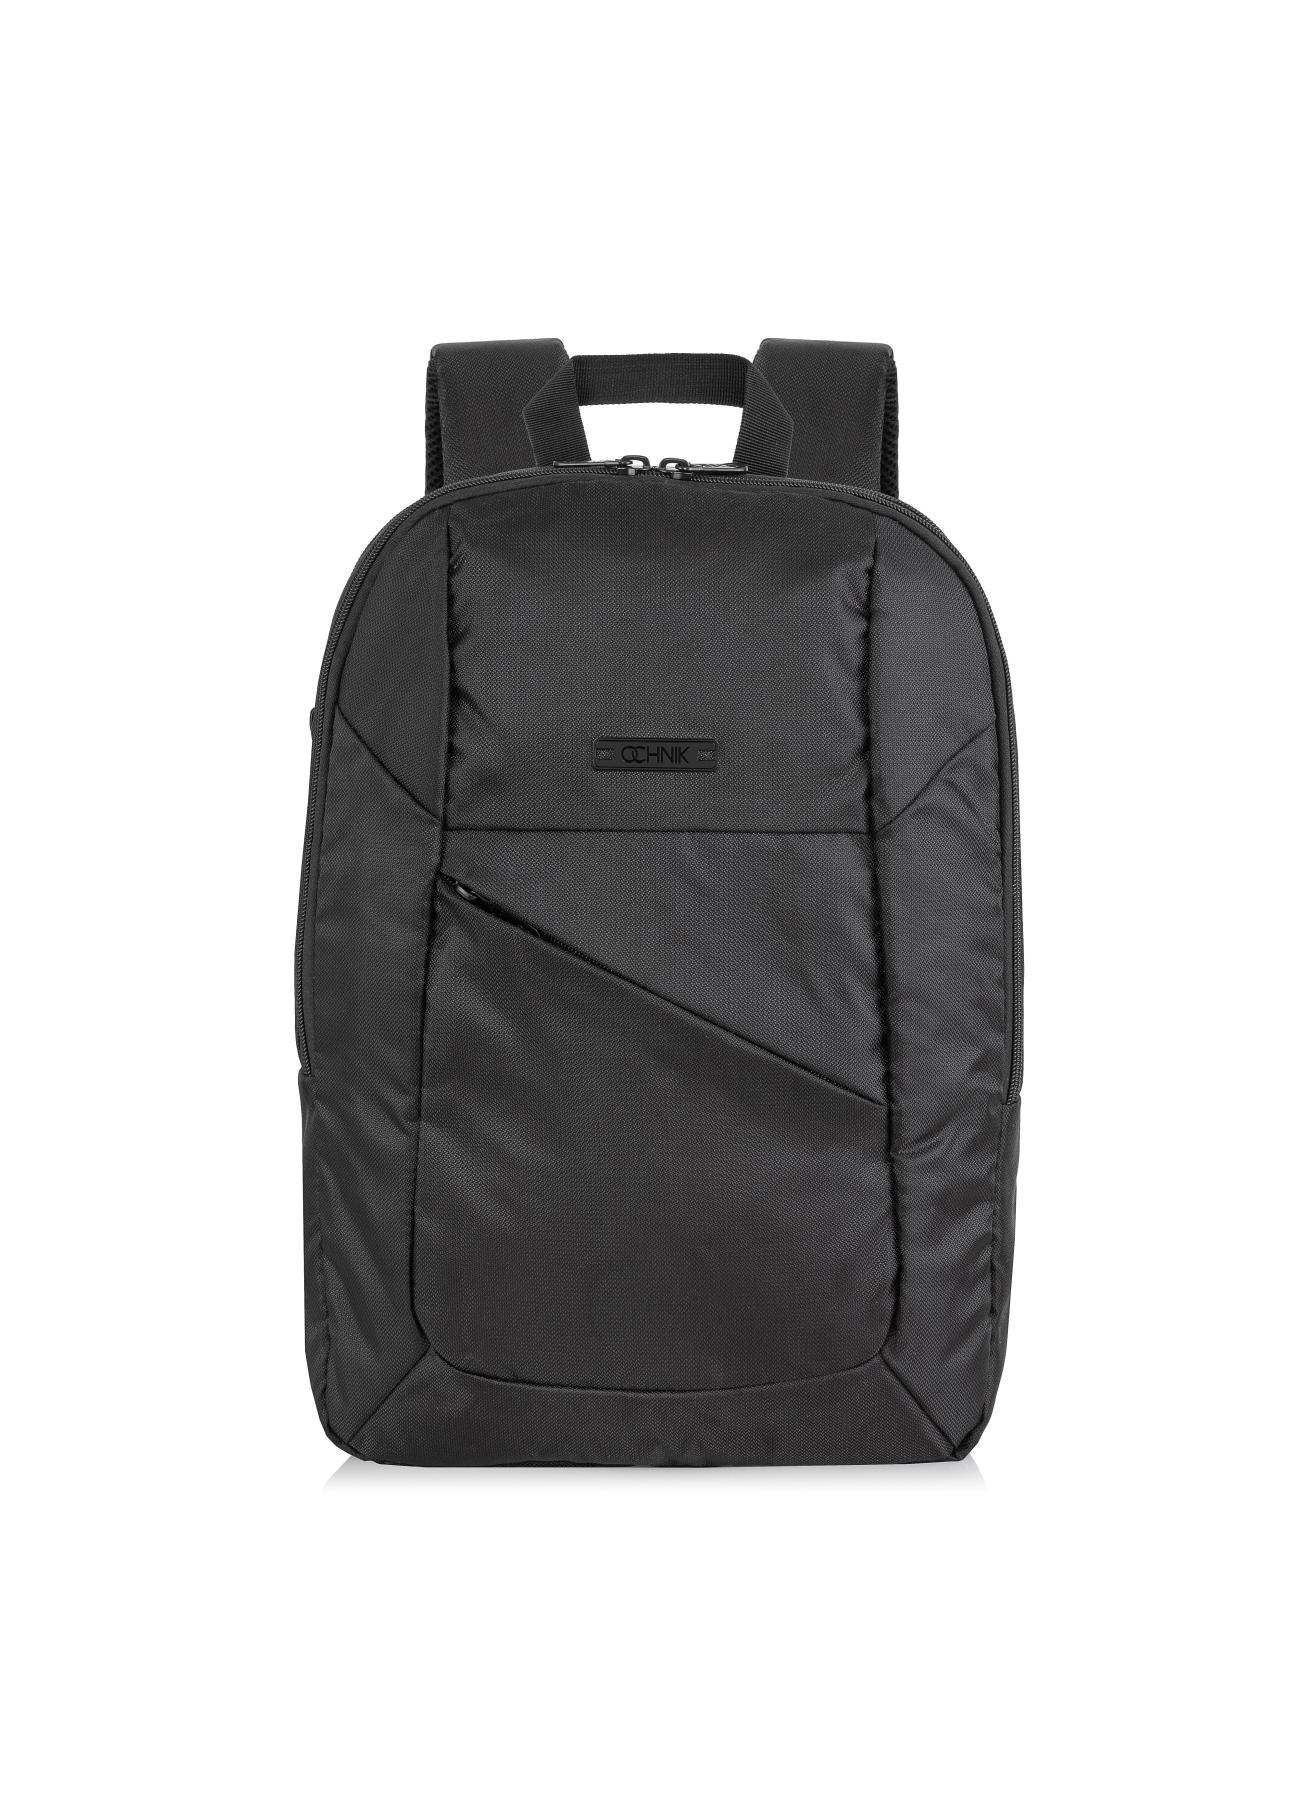 Pojemny czarny plecak męski TORMN-0262-99(Z23)